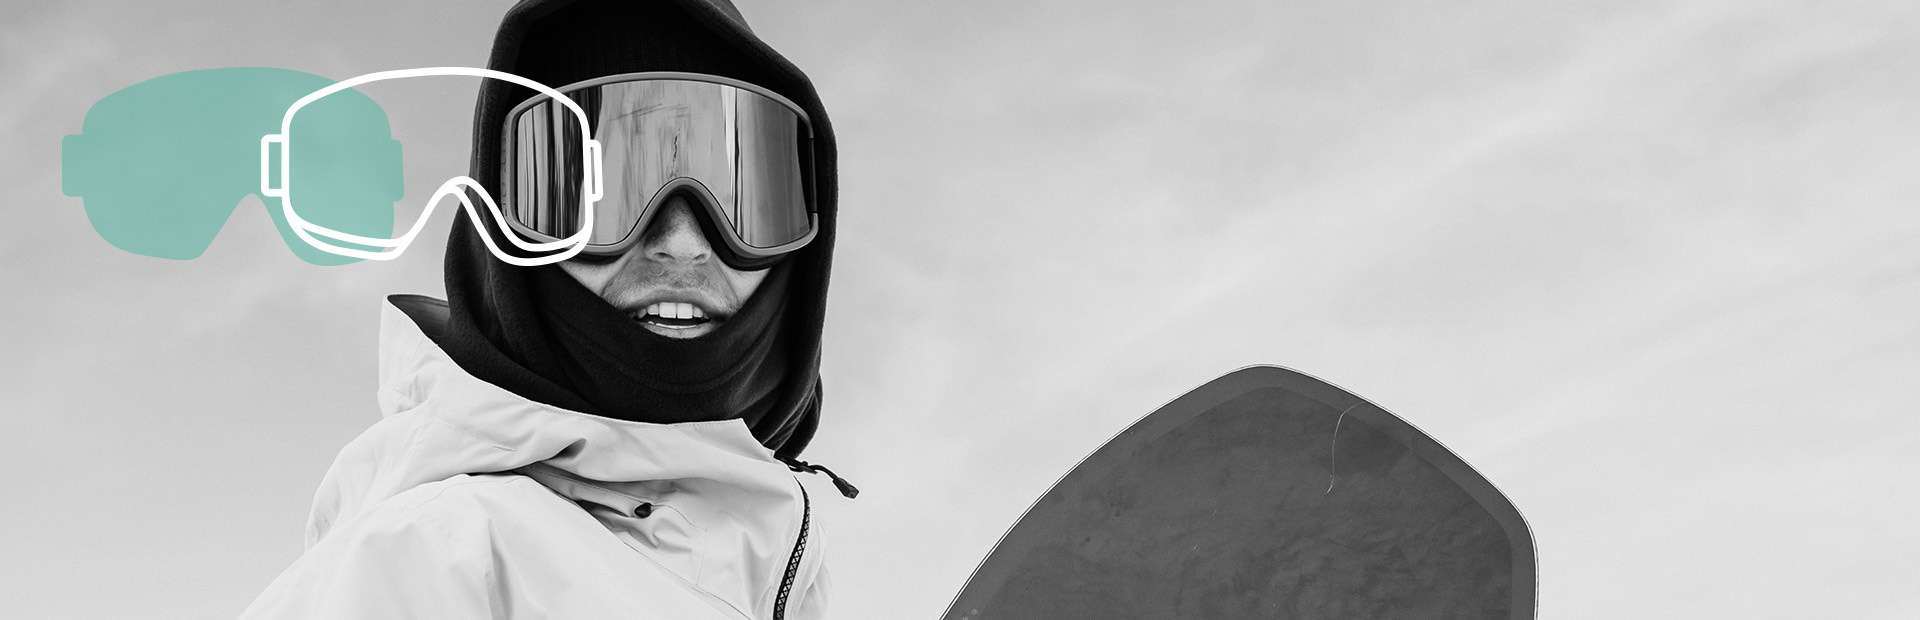 Closeup einer sphärischen Snowboardbrille